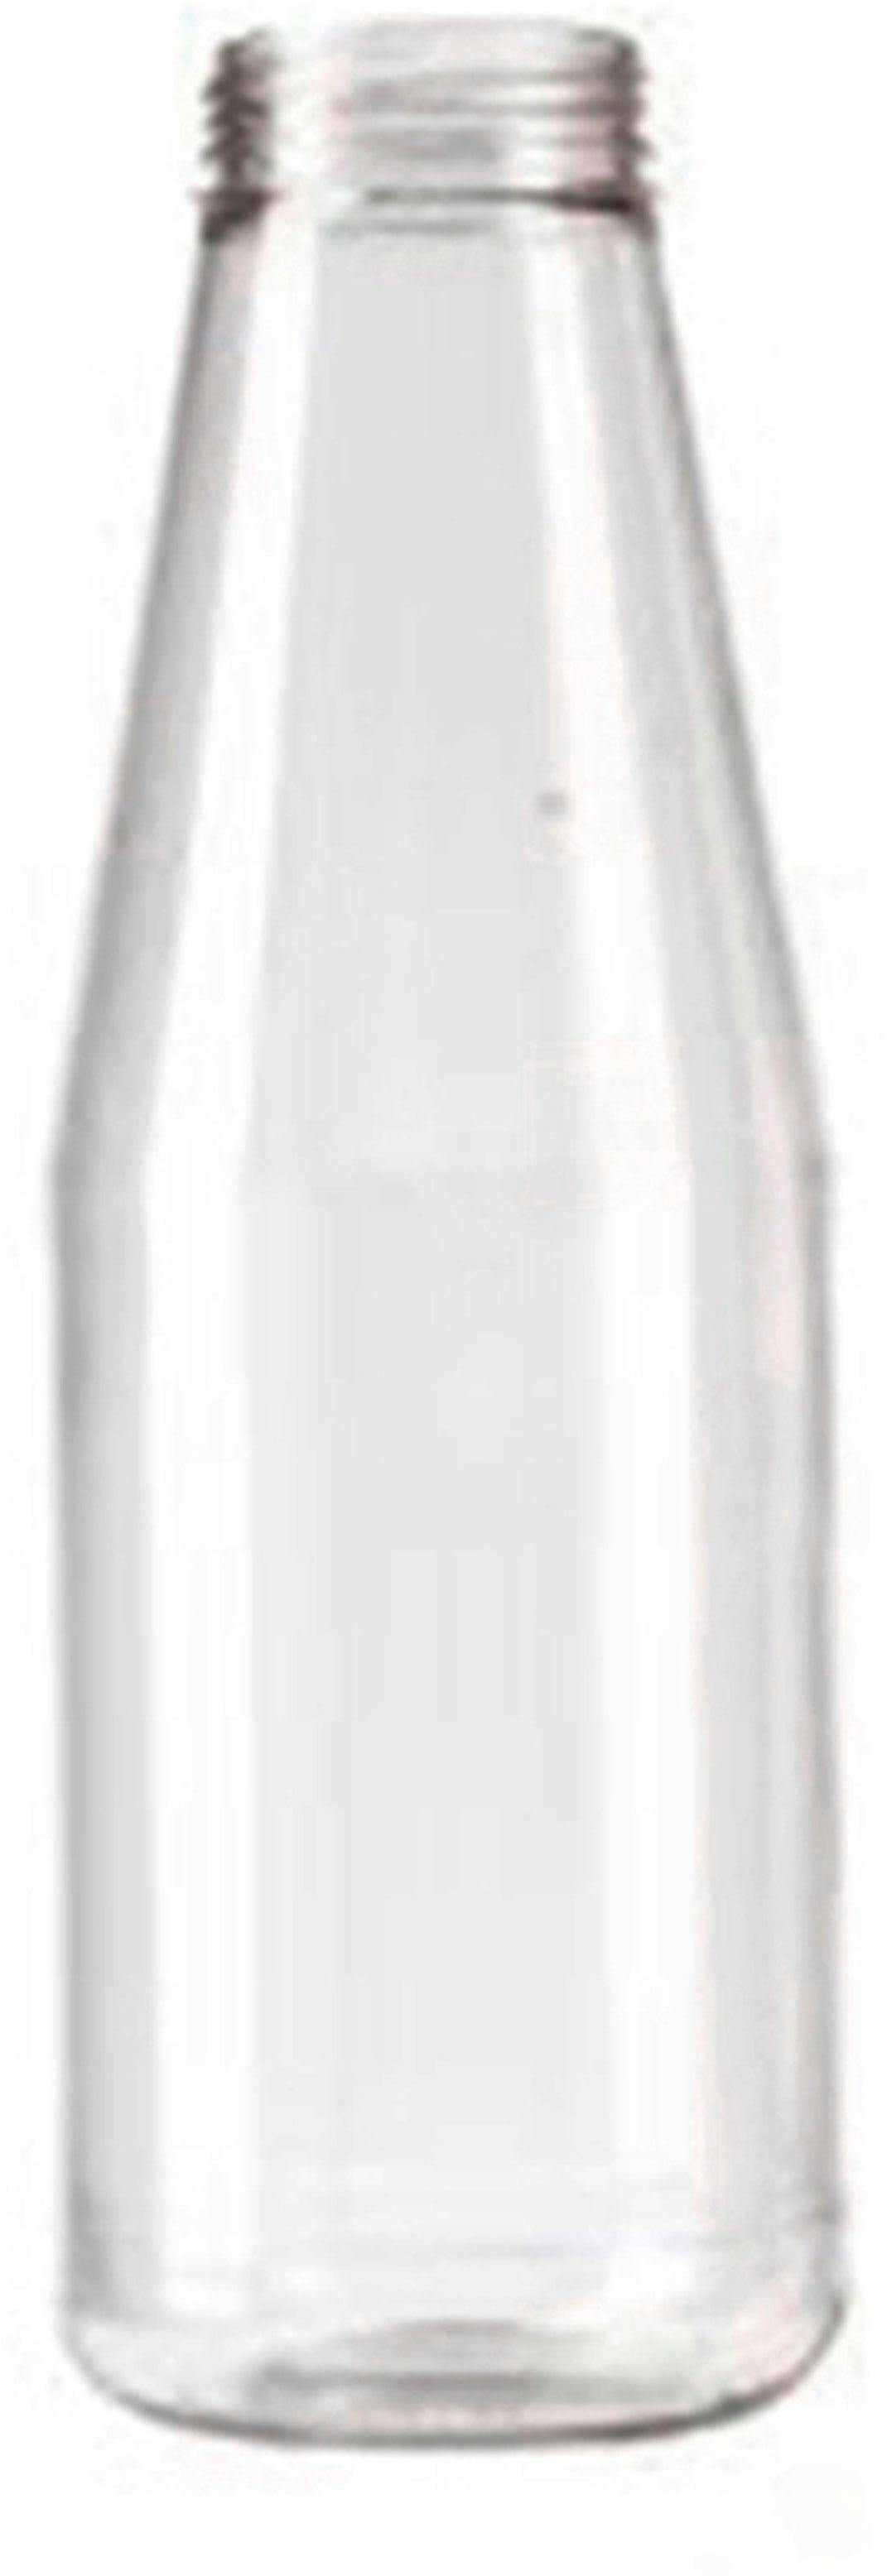 Bottle PET 1L TRANSP D40-75GR .